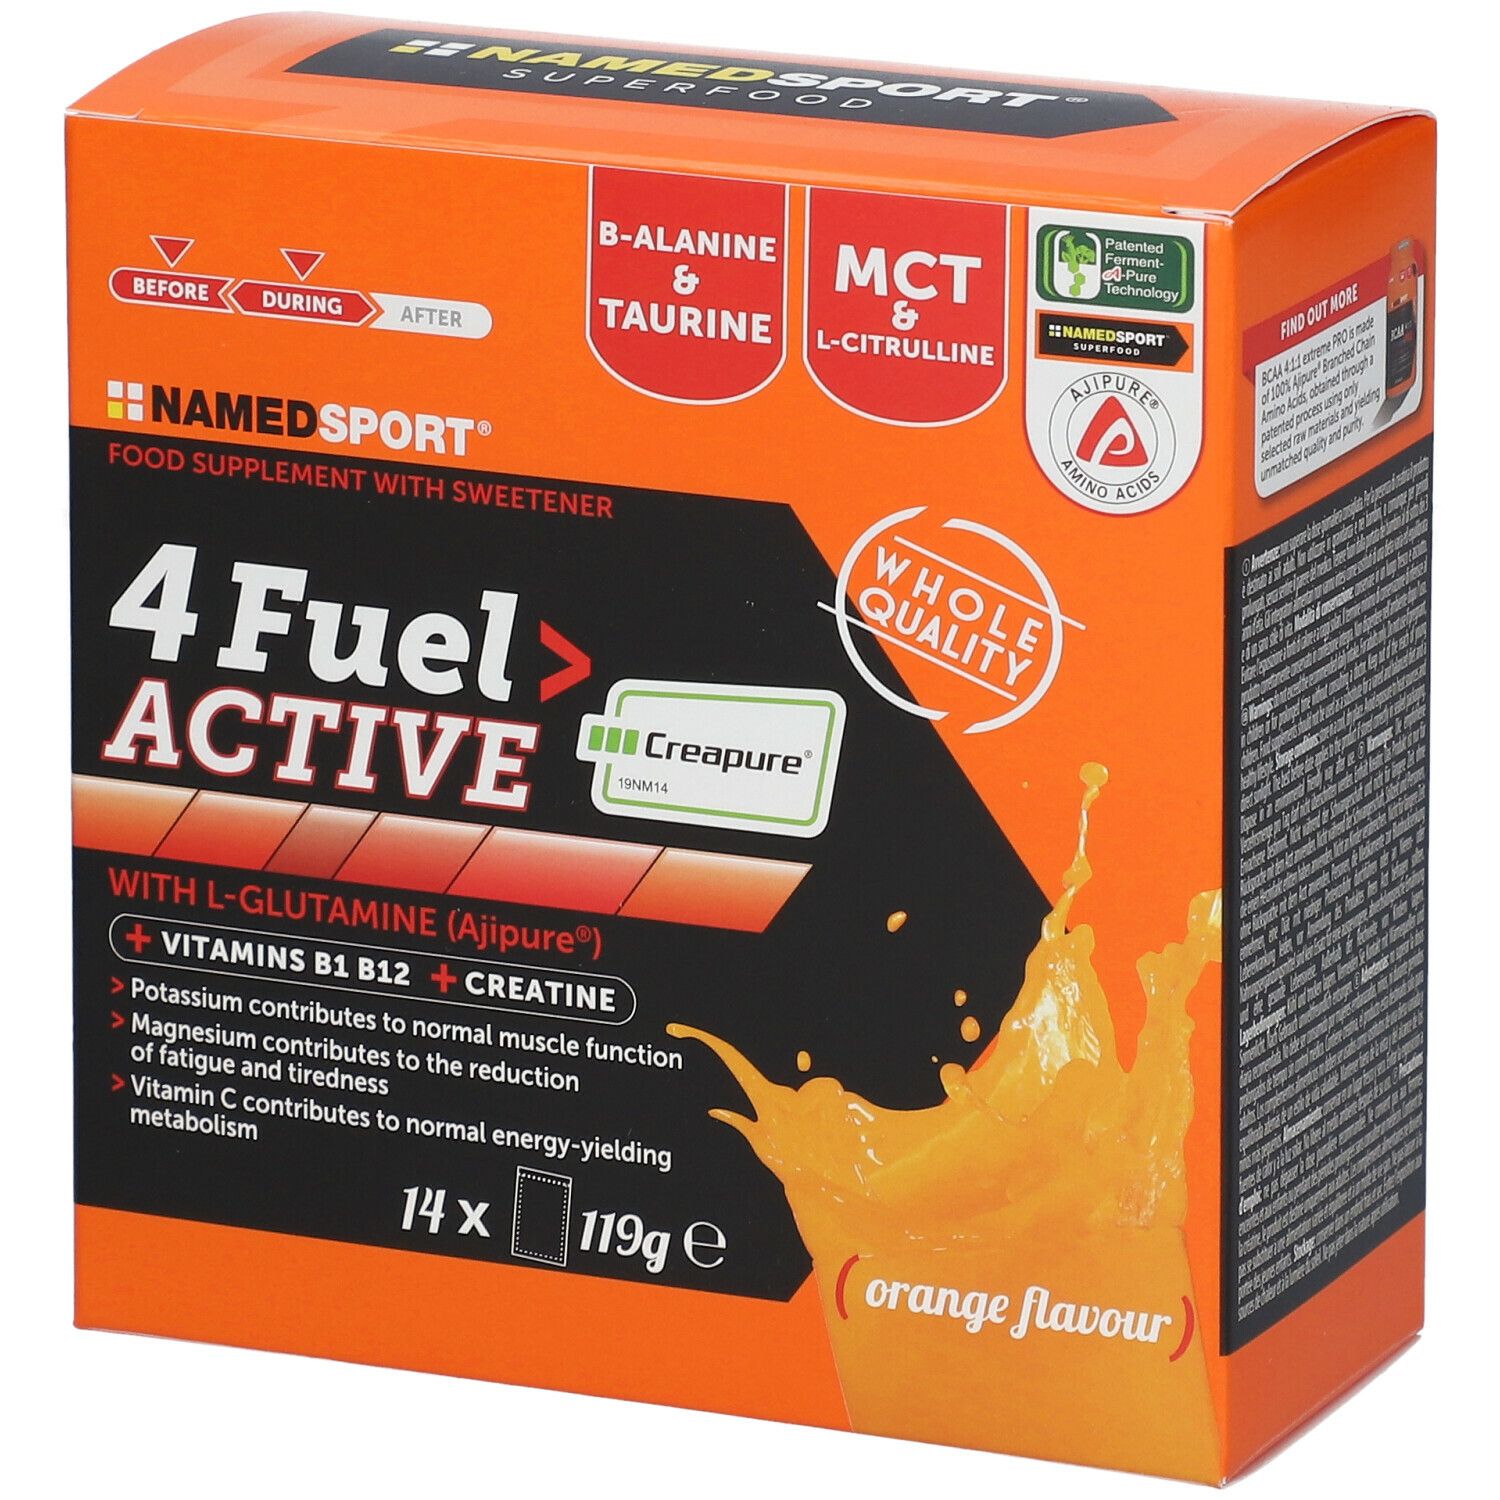 NAMEDSPORT® 4 Fuel Active Orange Flavor